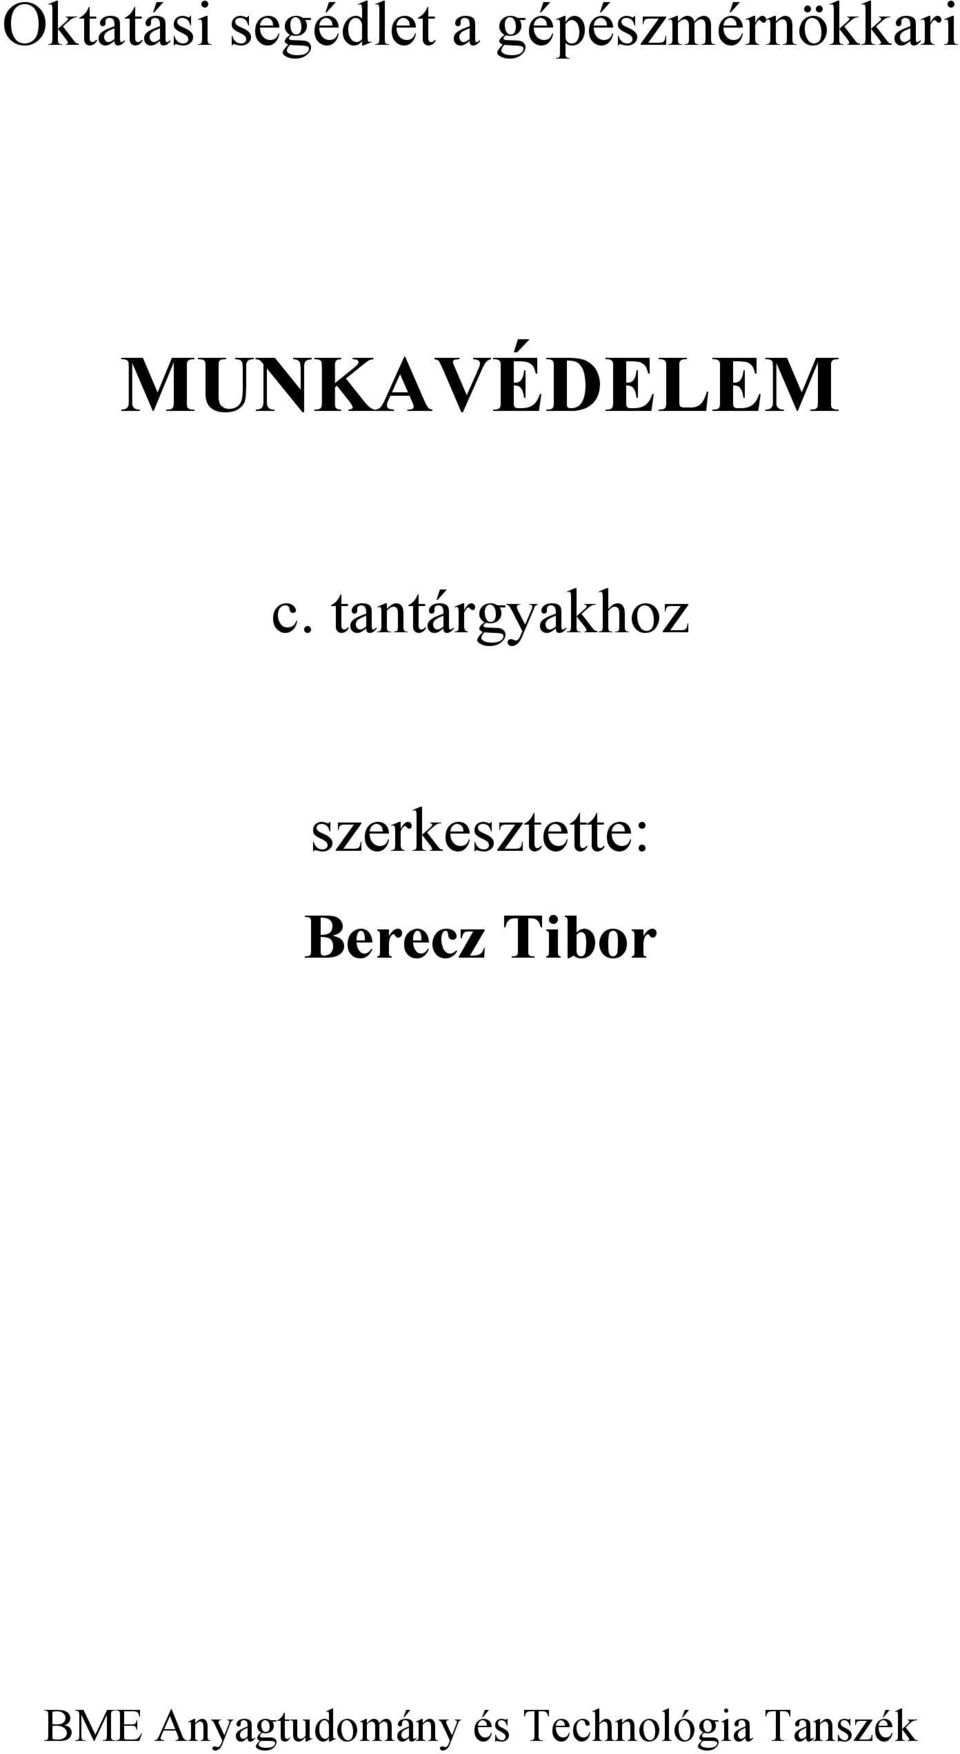 Oktatási segédlet a gépészmérnökkari MUNKAVÉDELEM. c. tantárgyakhoz.  szerkesztette: Berecz Tibor. BME Anyagtudomány és Technológia Tanszék - PDF  Free Download